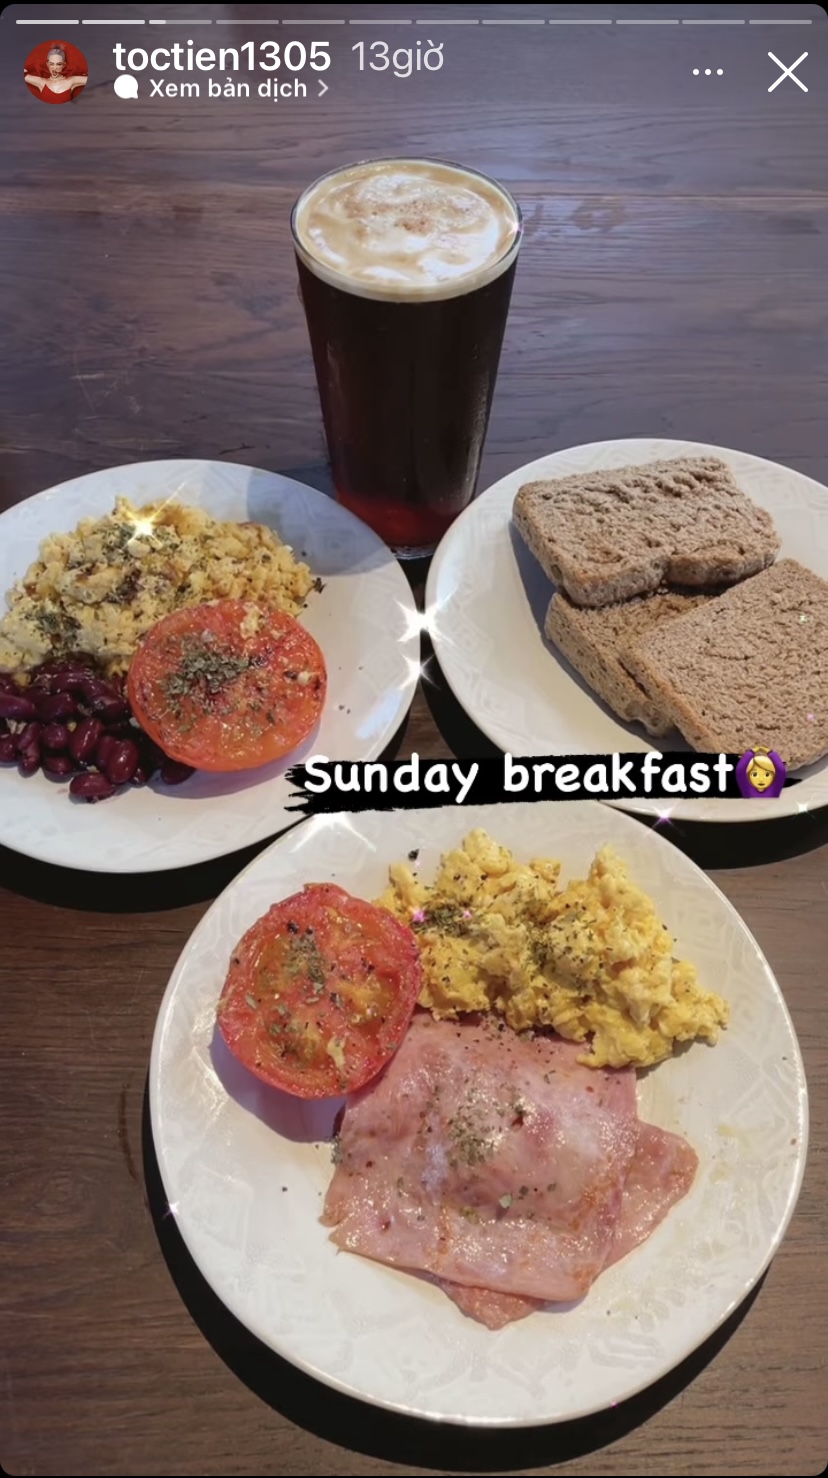 Bữa sáng ngày chủ nhật của cô là một chút trứng, thịt nguội ăn kèm bánh mì.